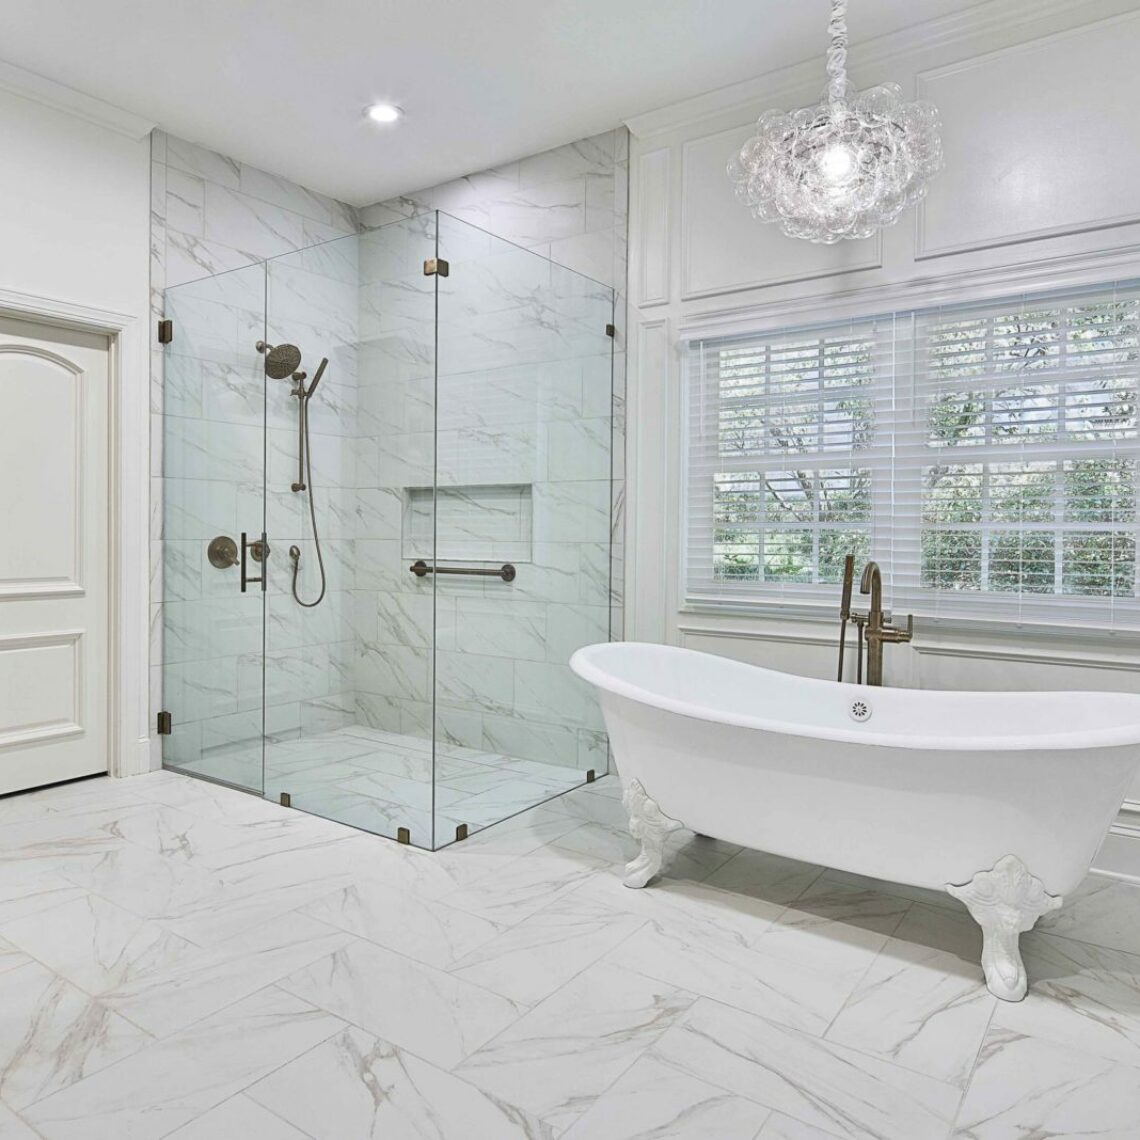 Charlotte's #1 Home Remodeling | Bathroom & Kitchen Remodels